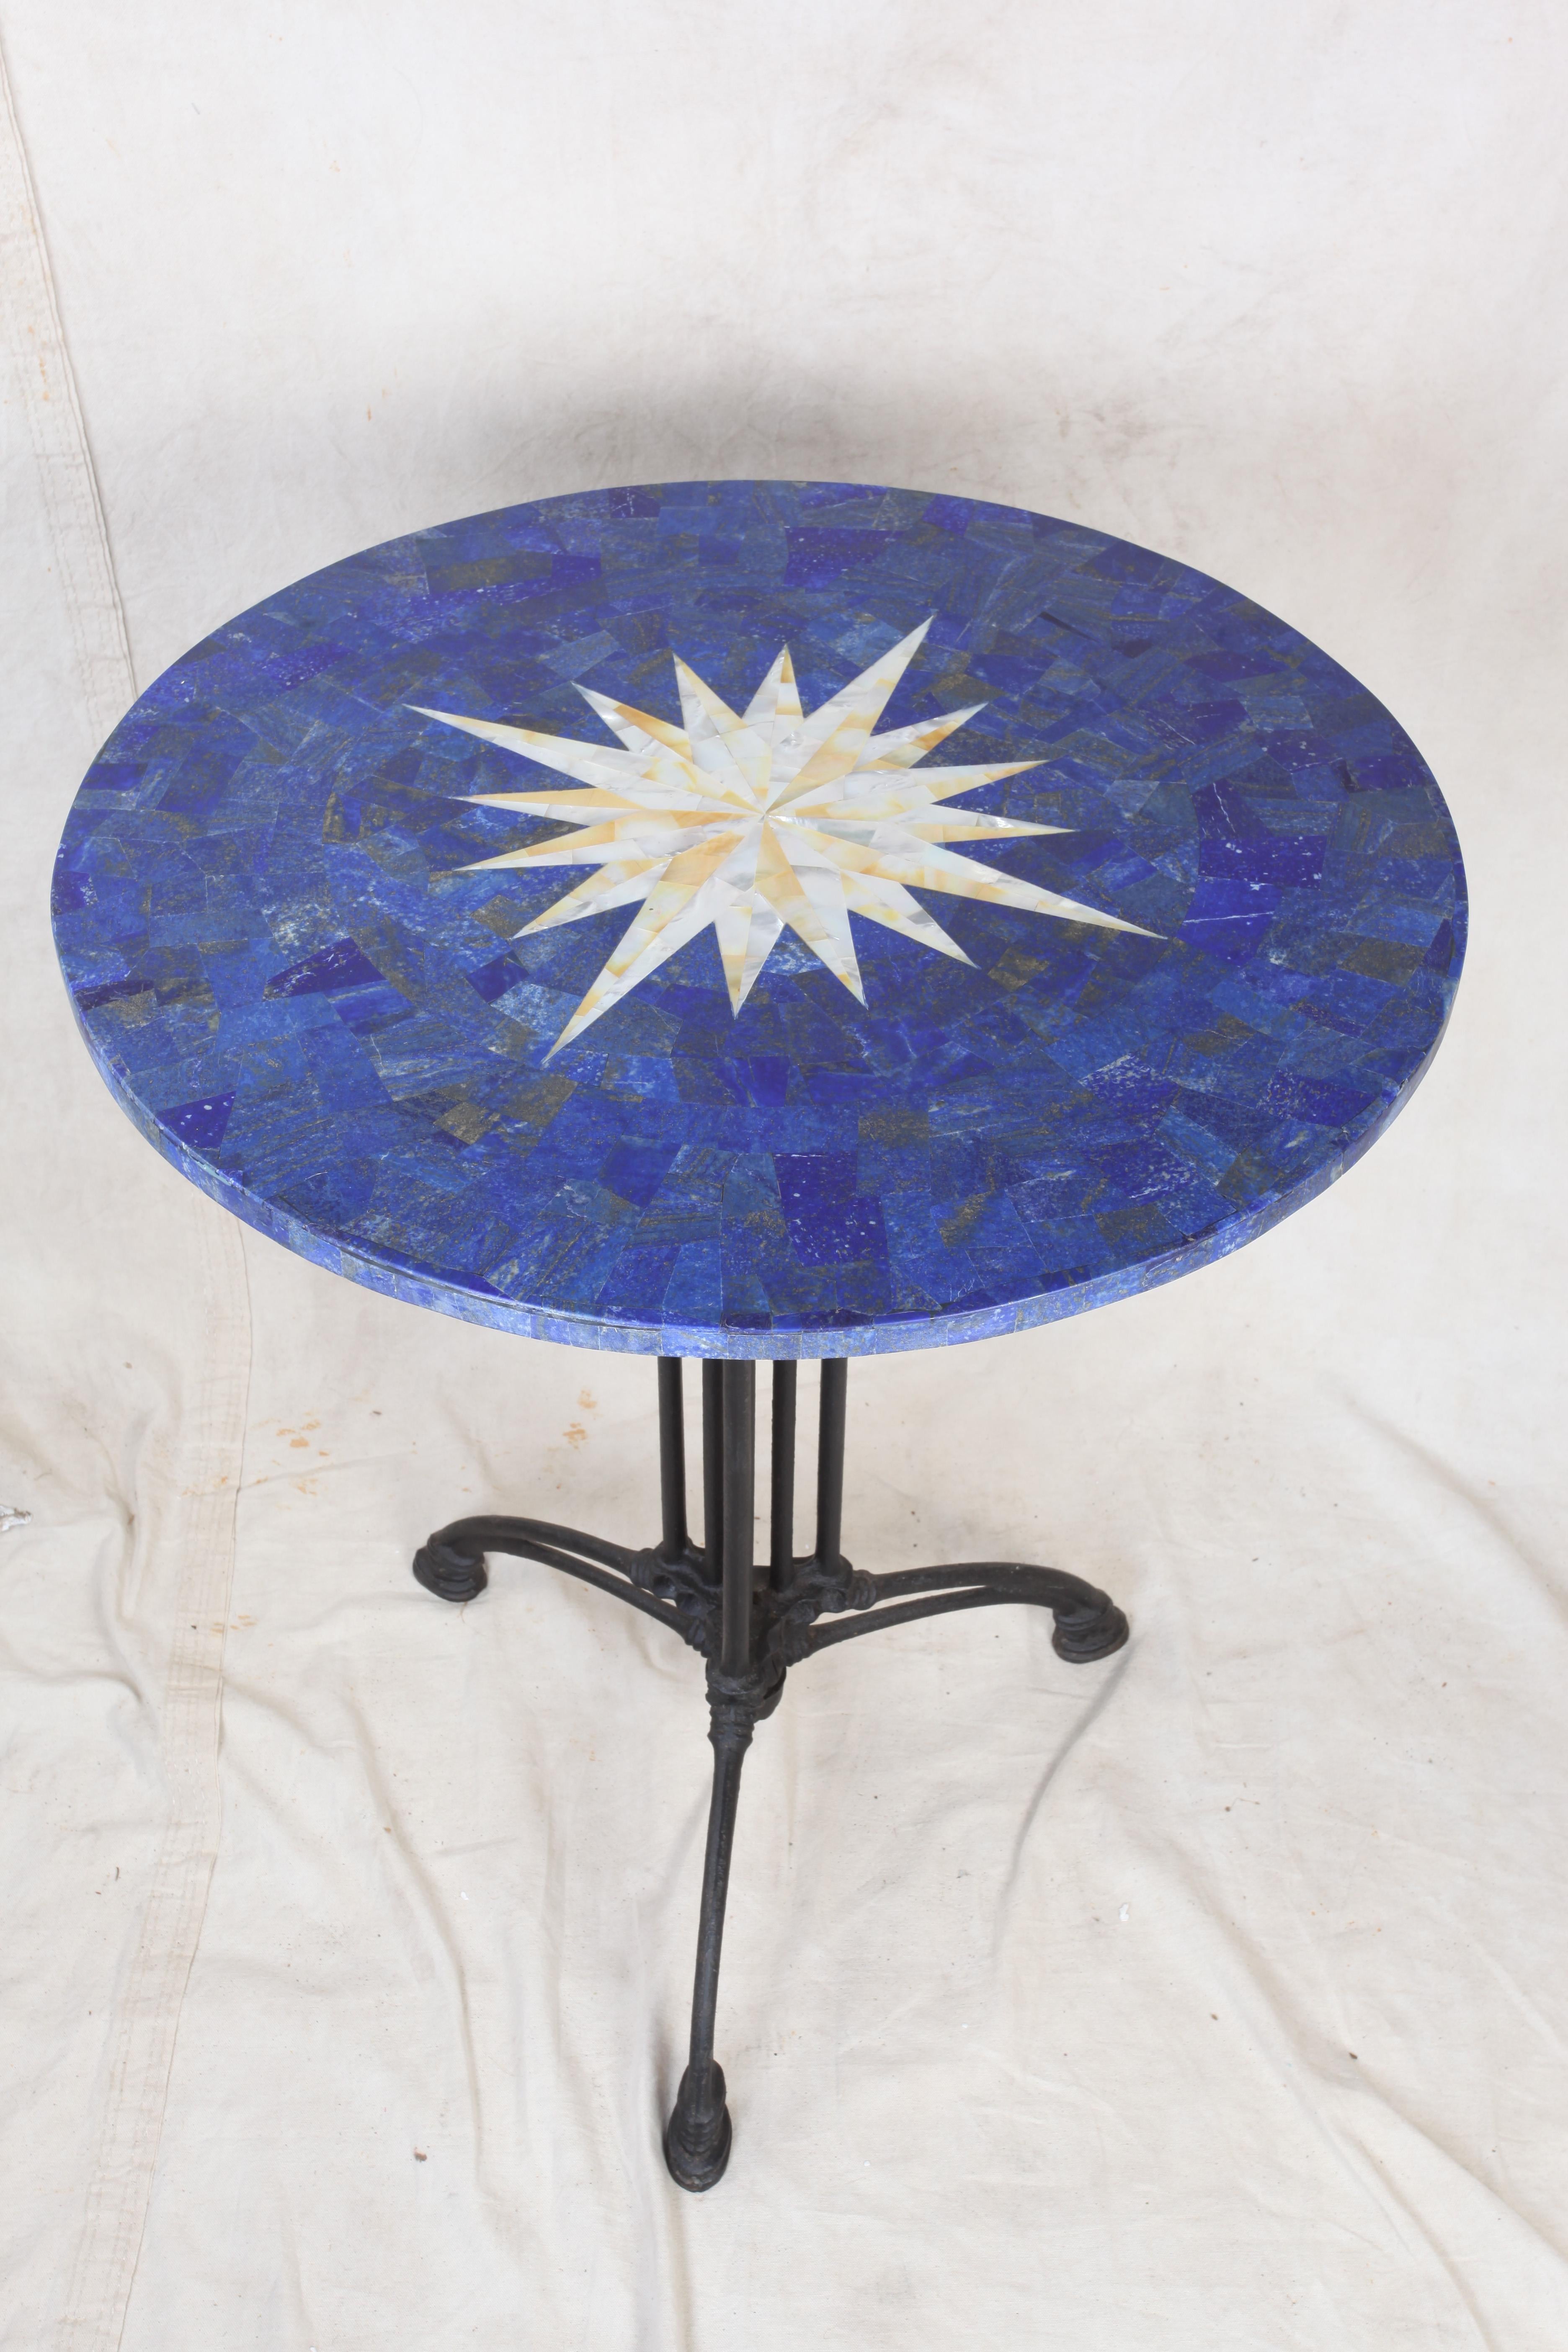 Plateau de table en pietra dura de lapis-lazuli avec rose des vents incrustée en nacre. Repose sur une base en aluminium revêtue de poudre. Peut être utilisé à l'intérieur ou à l'extérieur.